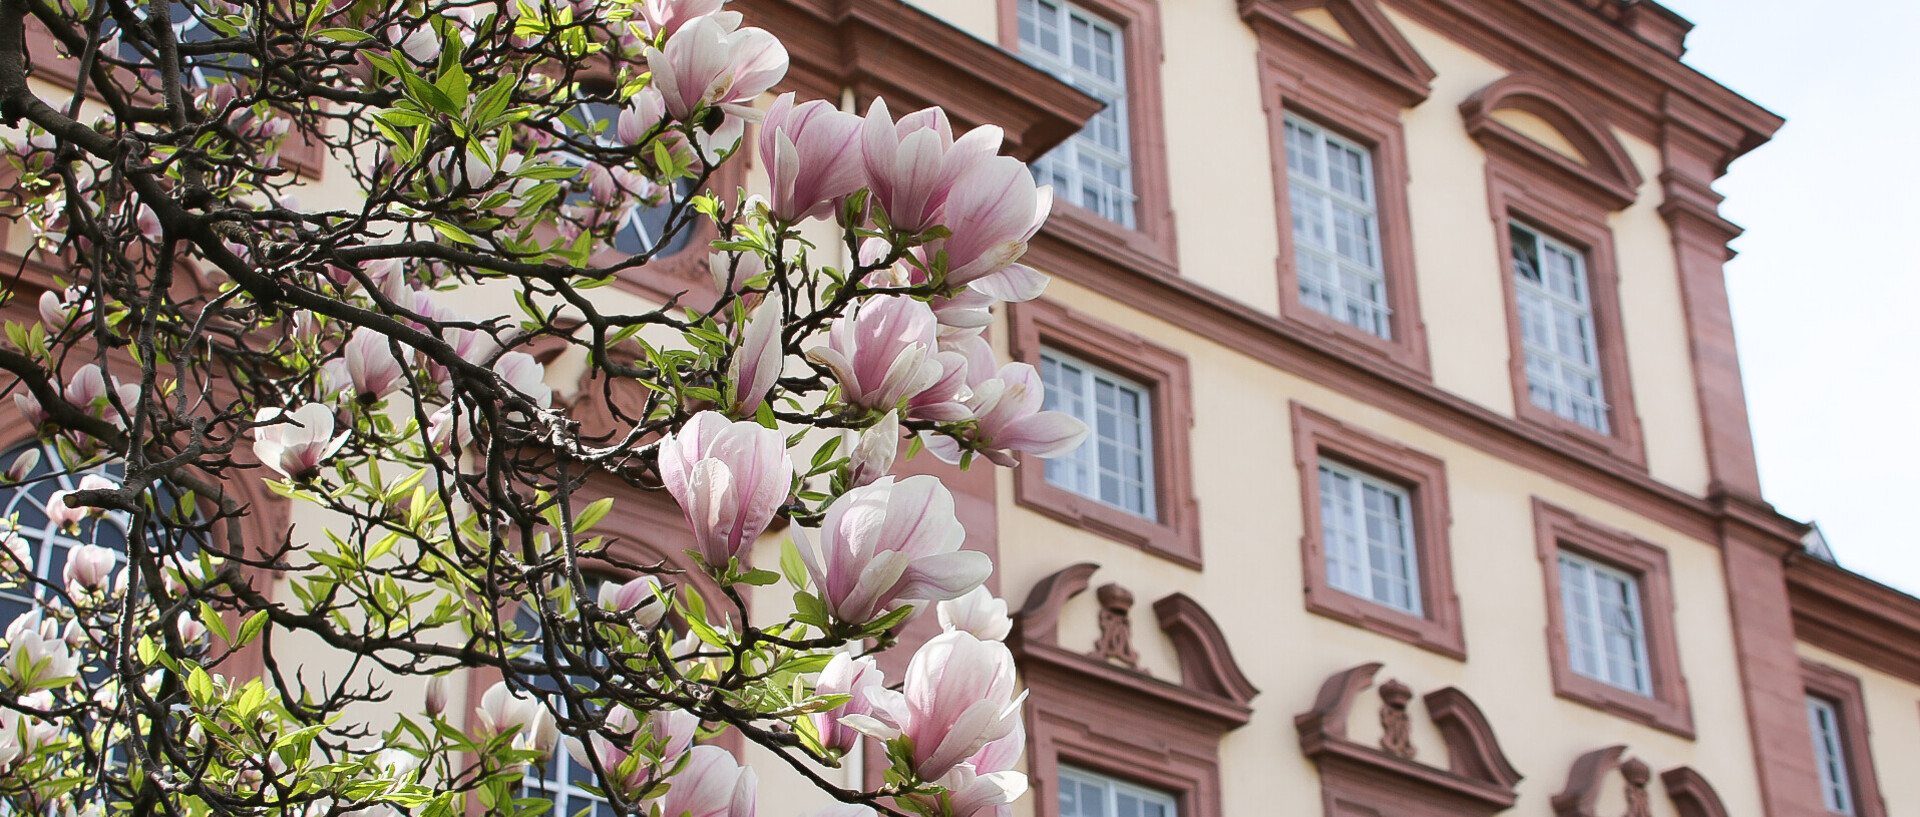 Westflügel des Schlosses mit Magnolienblüten